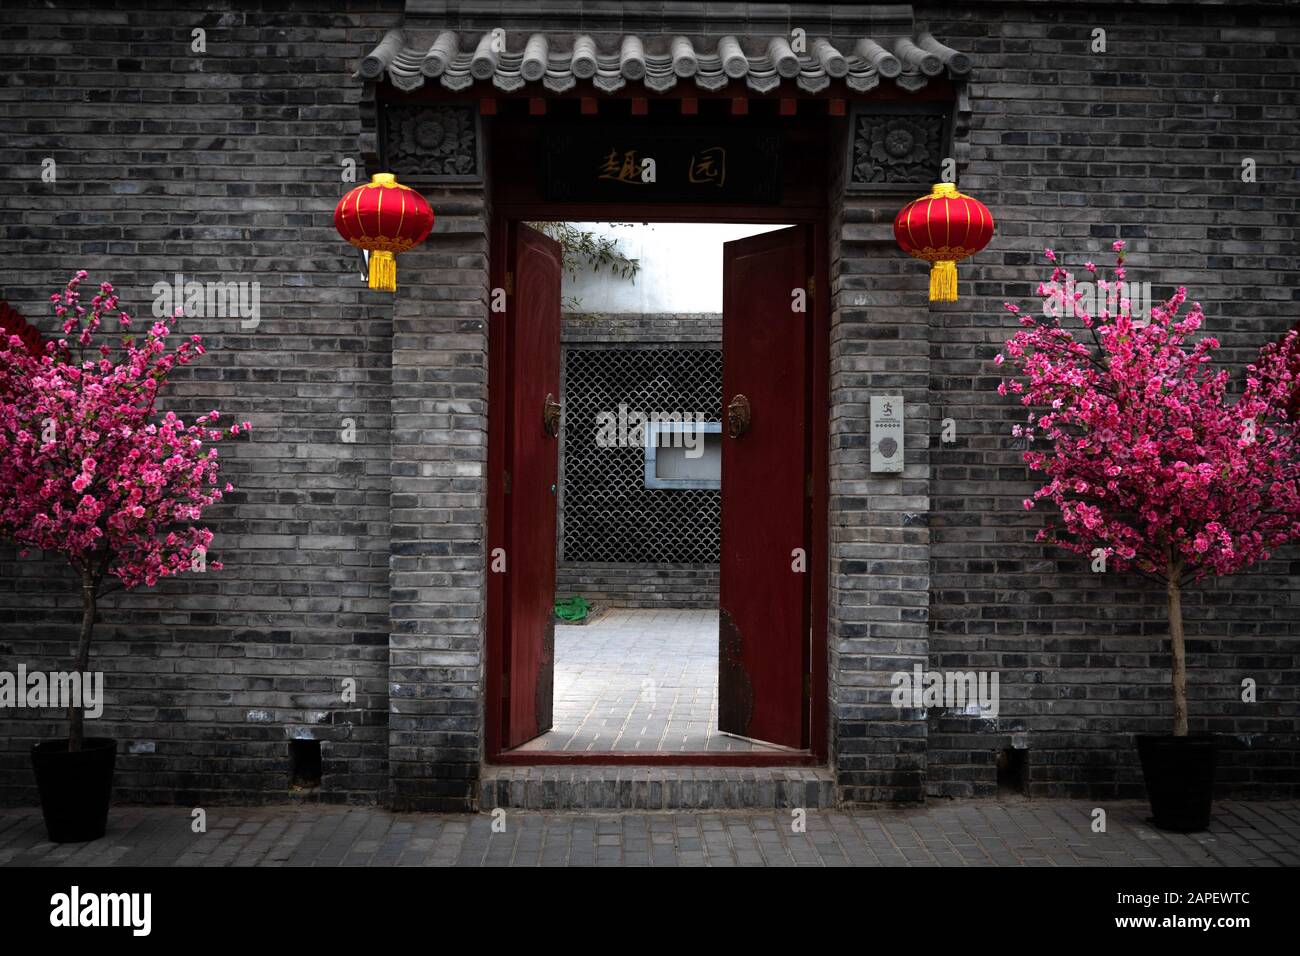 Rote Tür und Tor, die Eingang zu einem privaten Innenhof und einem Wohnhaus in einer Hutong-Gasse in Peking, China, bieten. Dekoriert für das chinesische Neujahr Stockfoto